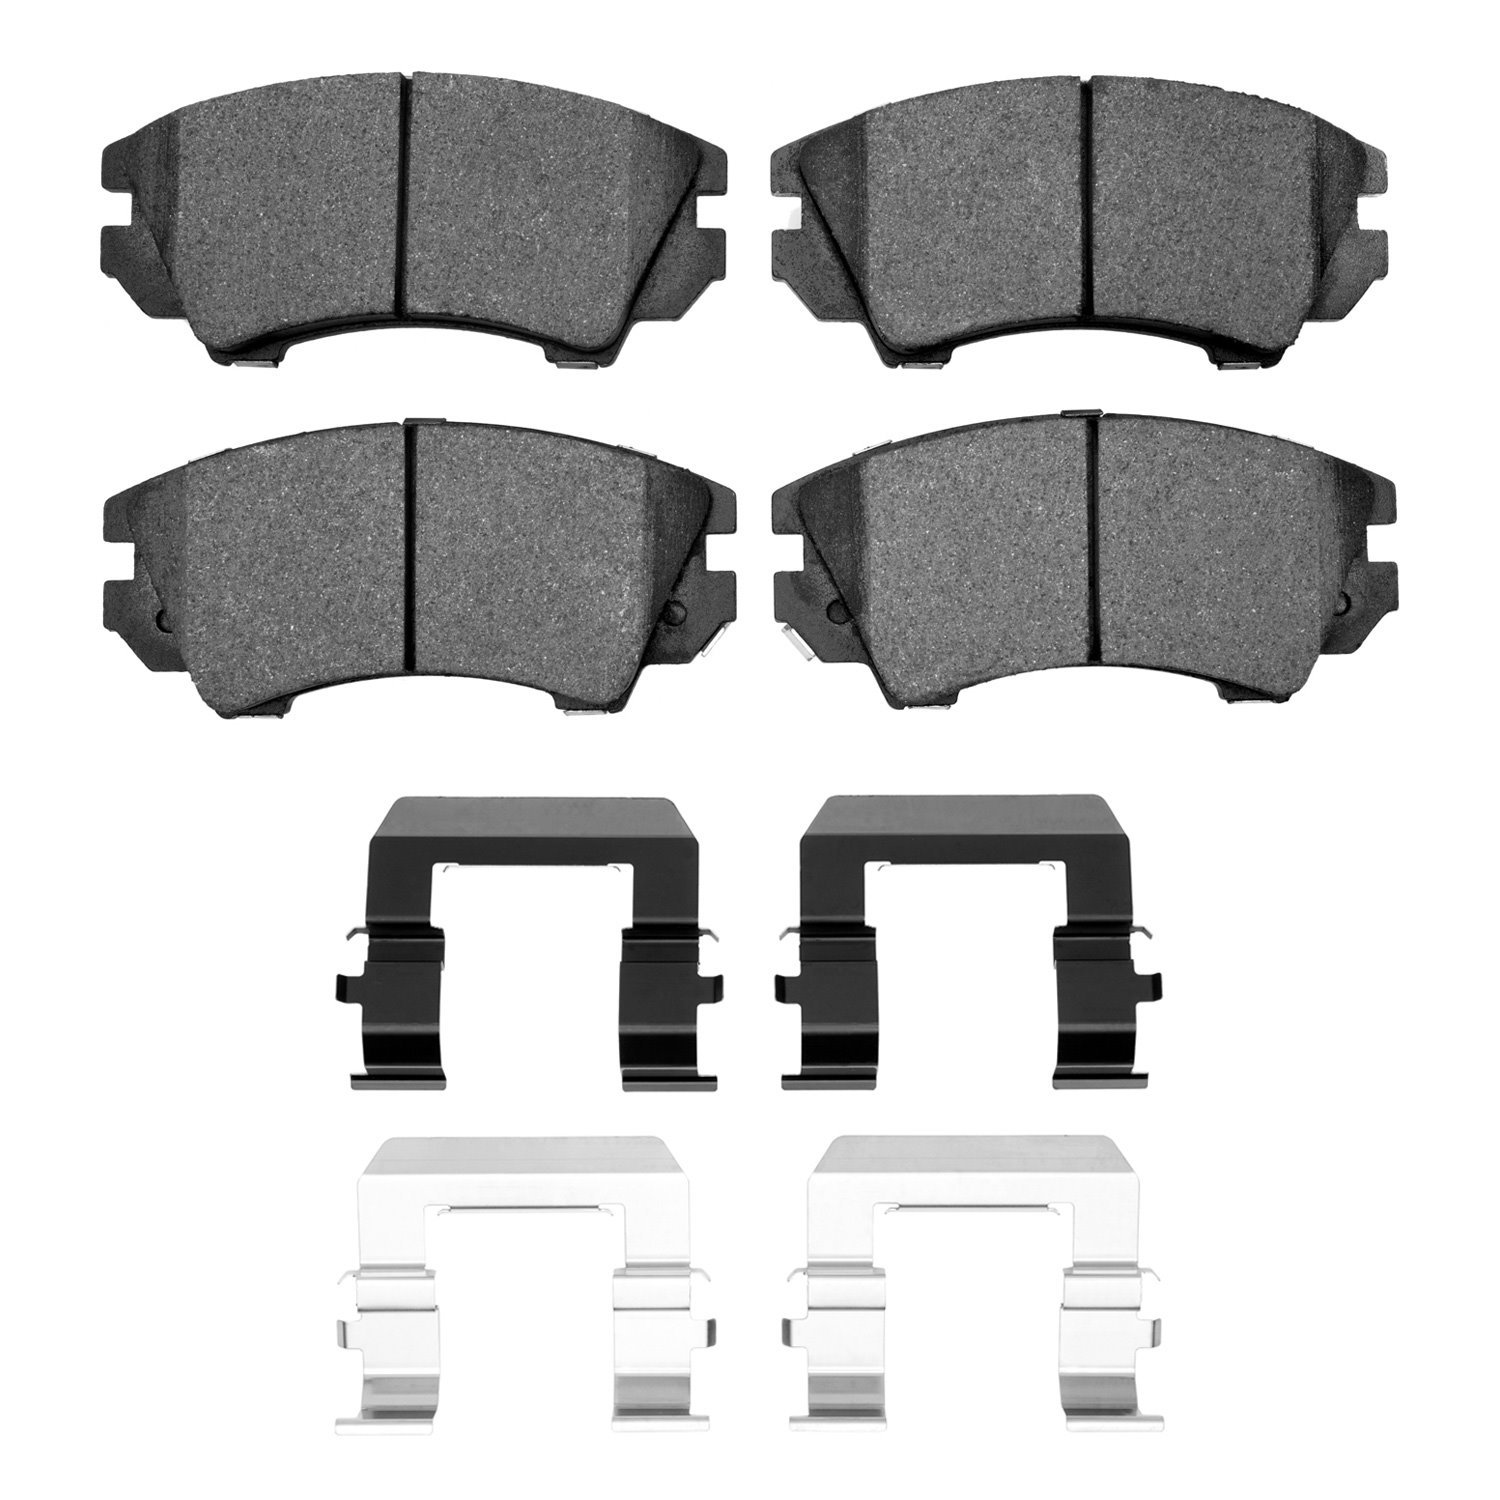 1310-1404-01 3000-Series Ceramic Brake Pads & Hardware Kit, 2010-2017 GM, Position: Front